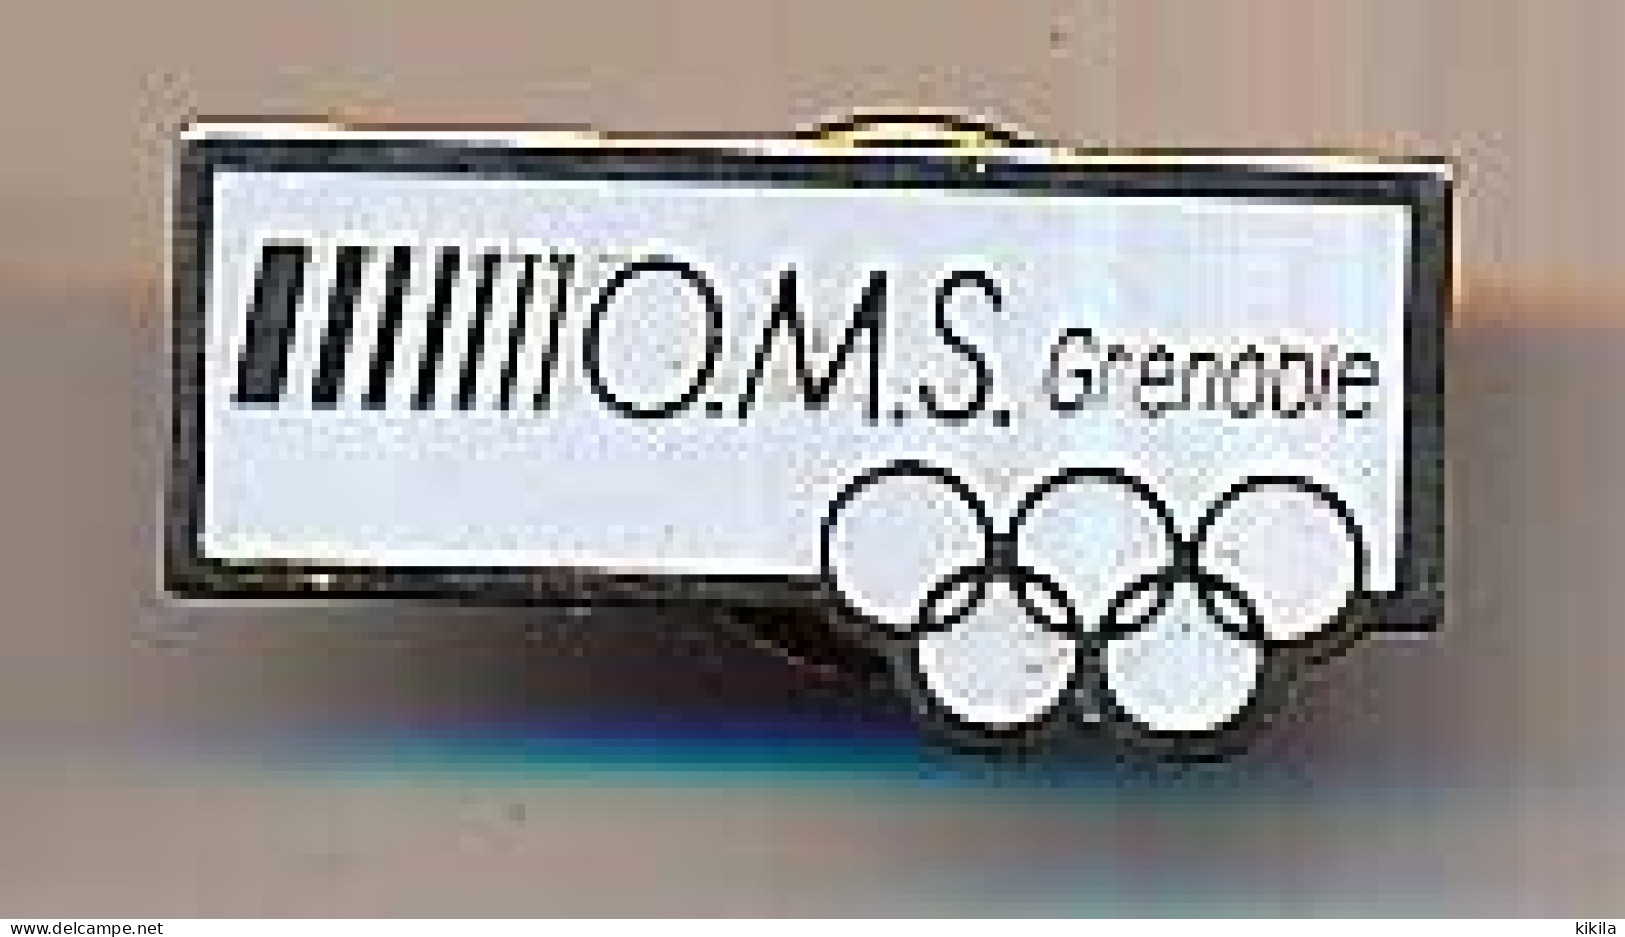 Pin's 26 X 13 Mm X° Jeux Olympiques D'Hiver De Grenoble 1968  O M S Grenoble - Jeux Olympiques